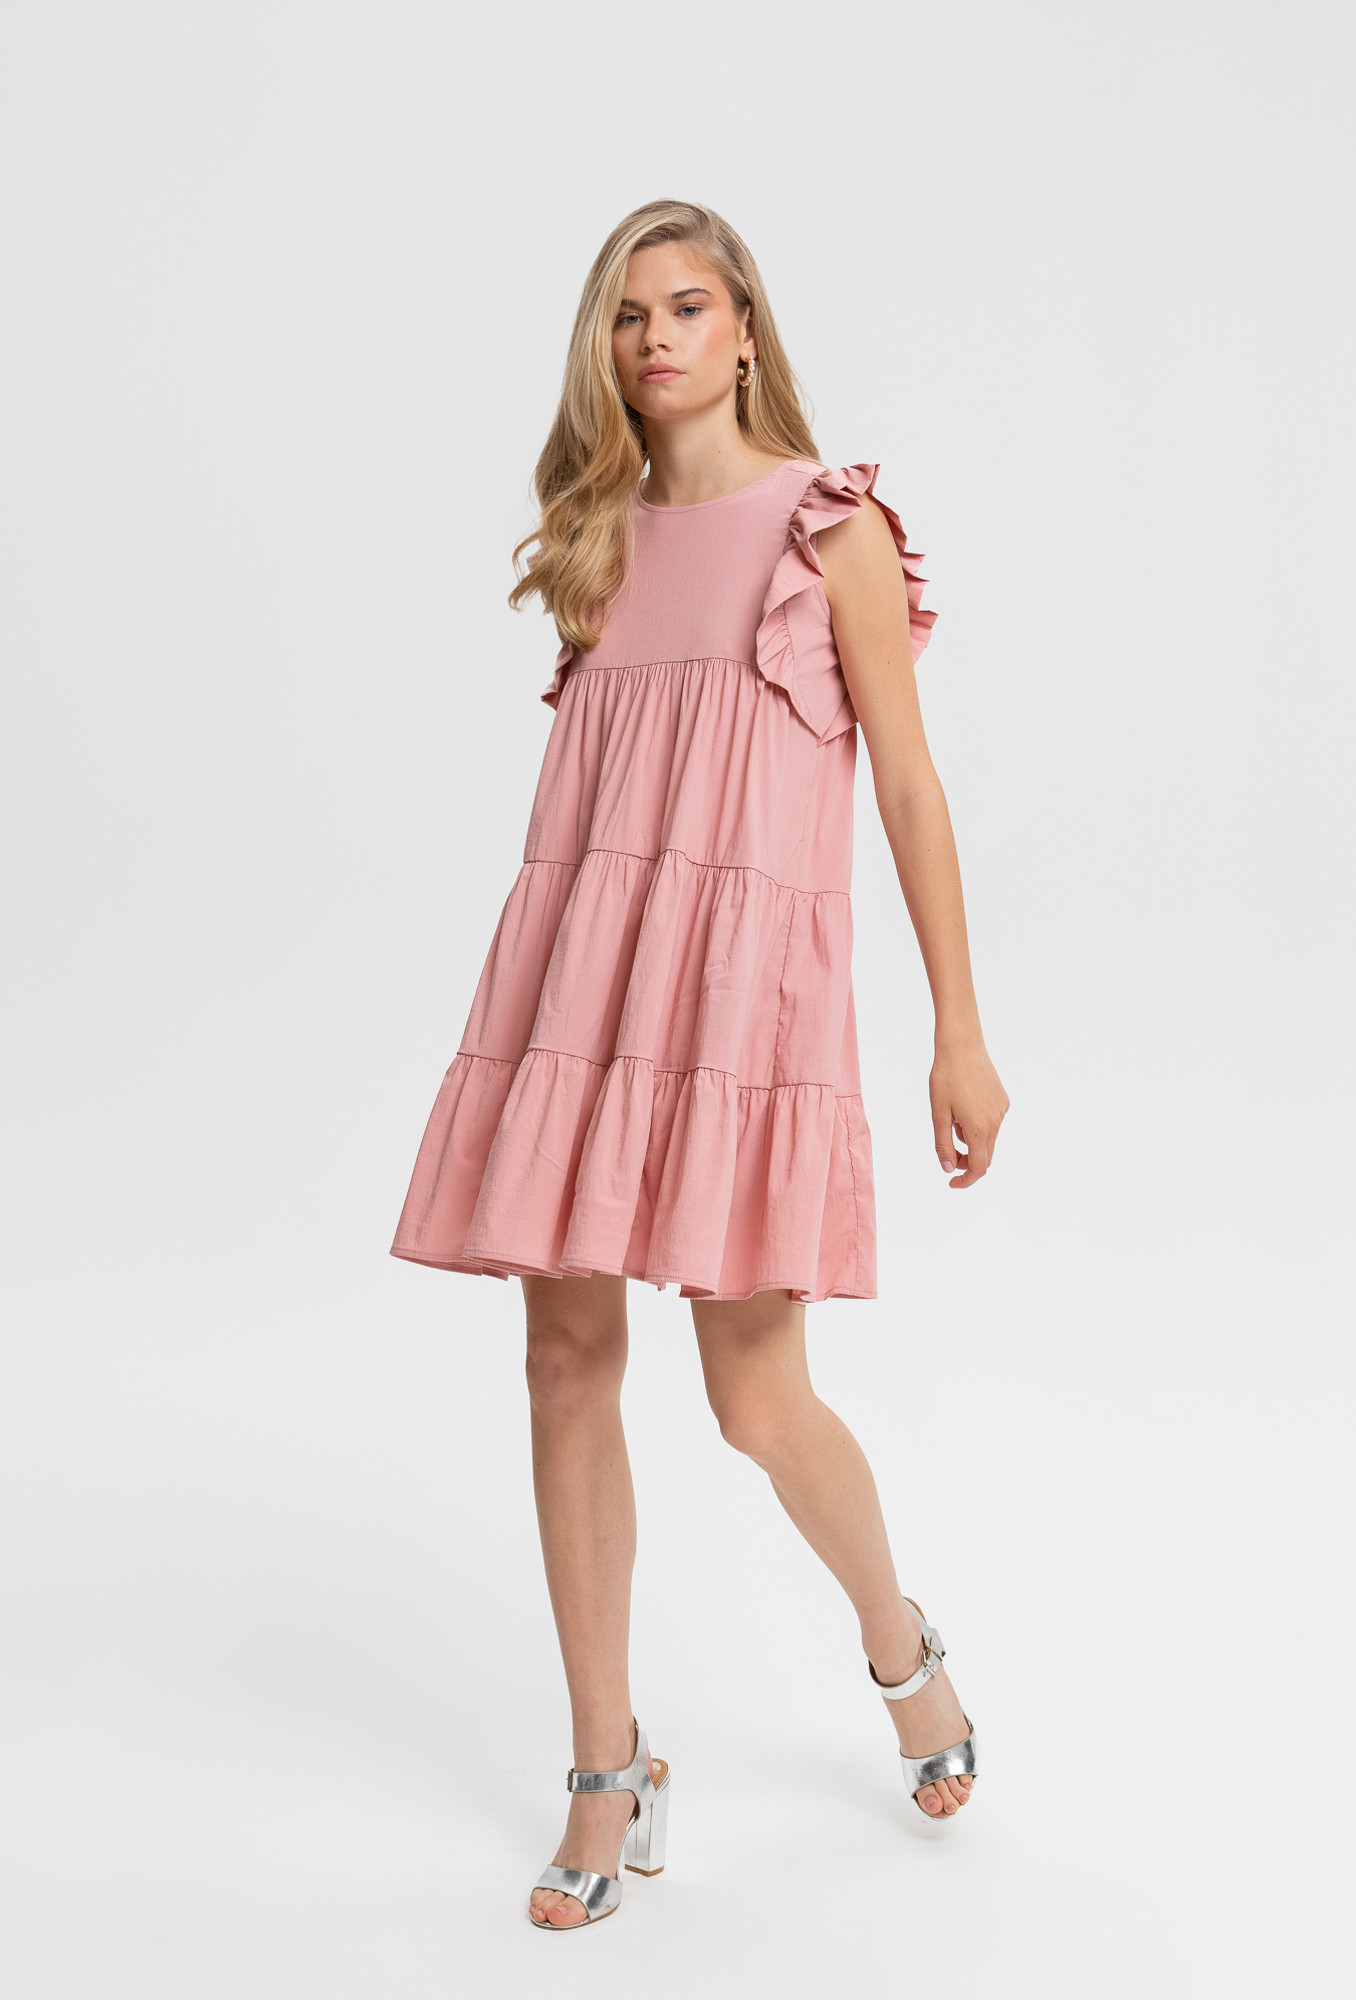 Monnari Šaty Mini šaty s volánem růžové 40